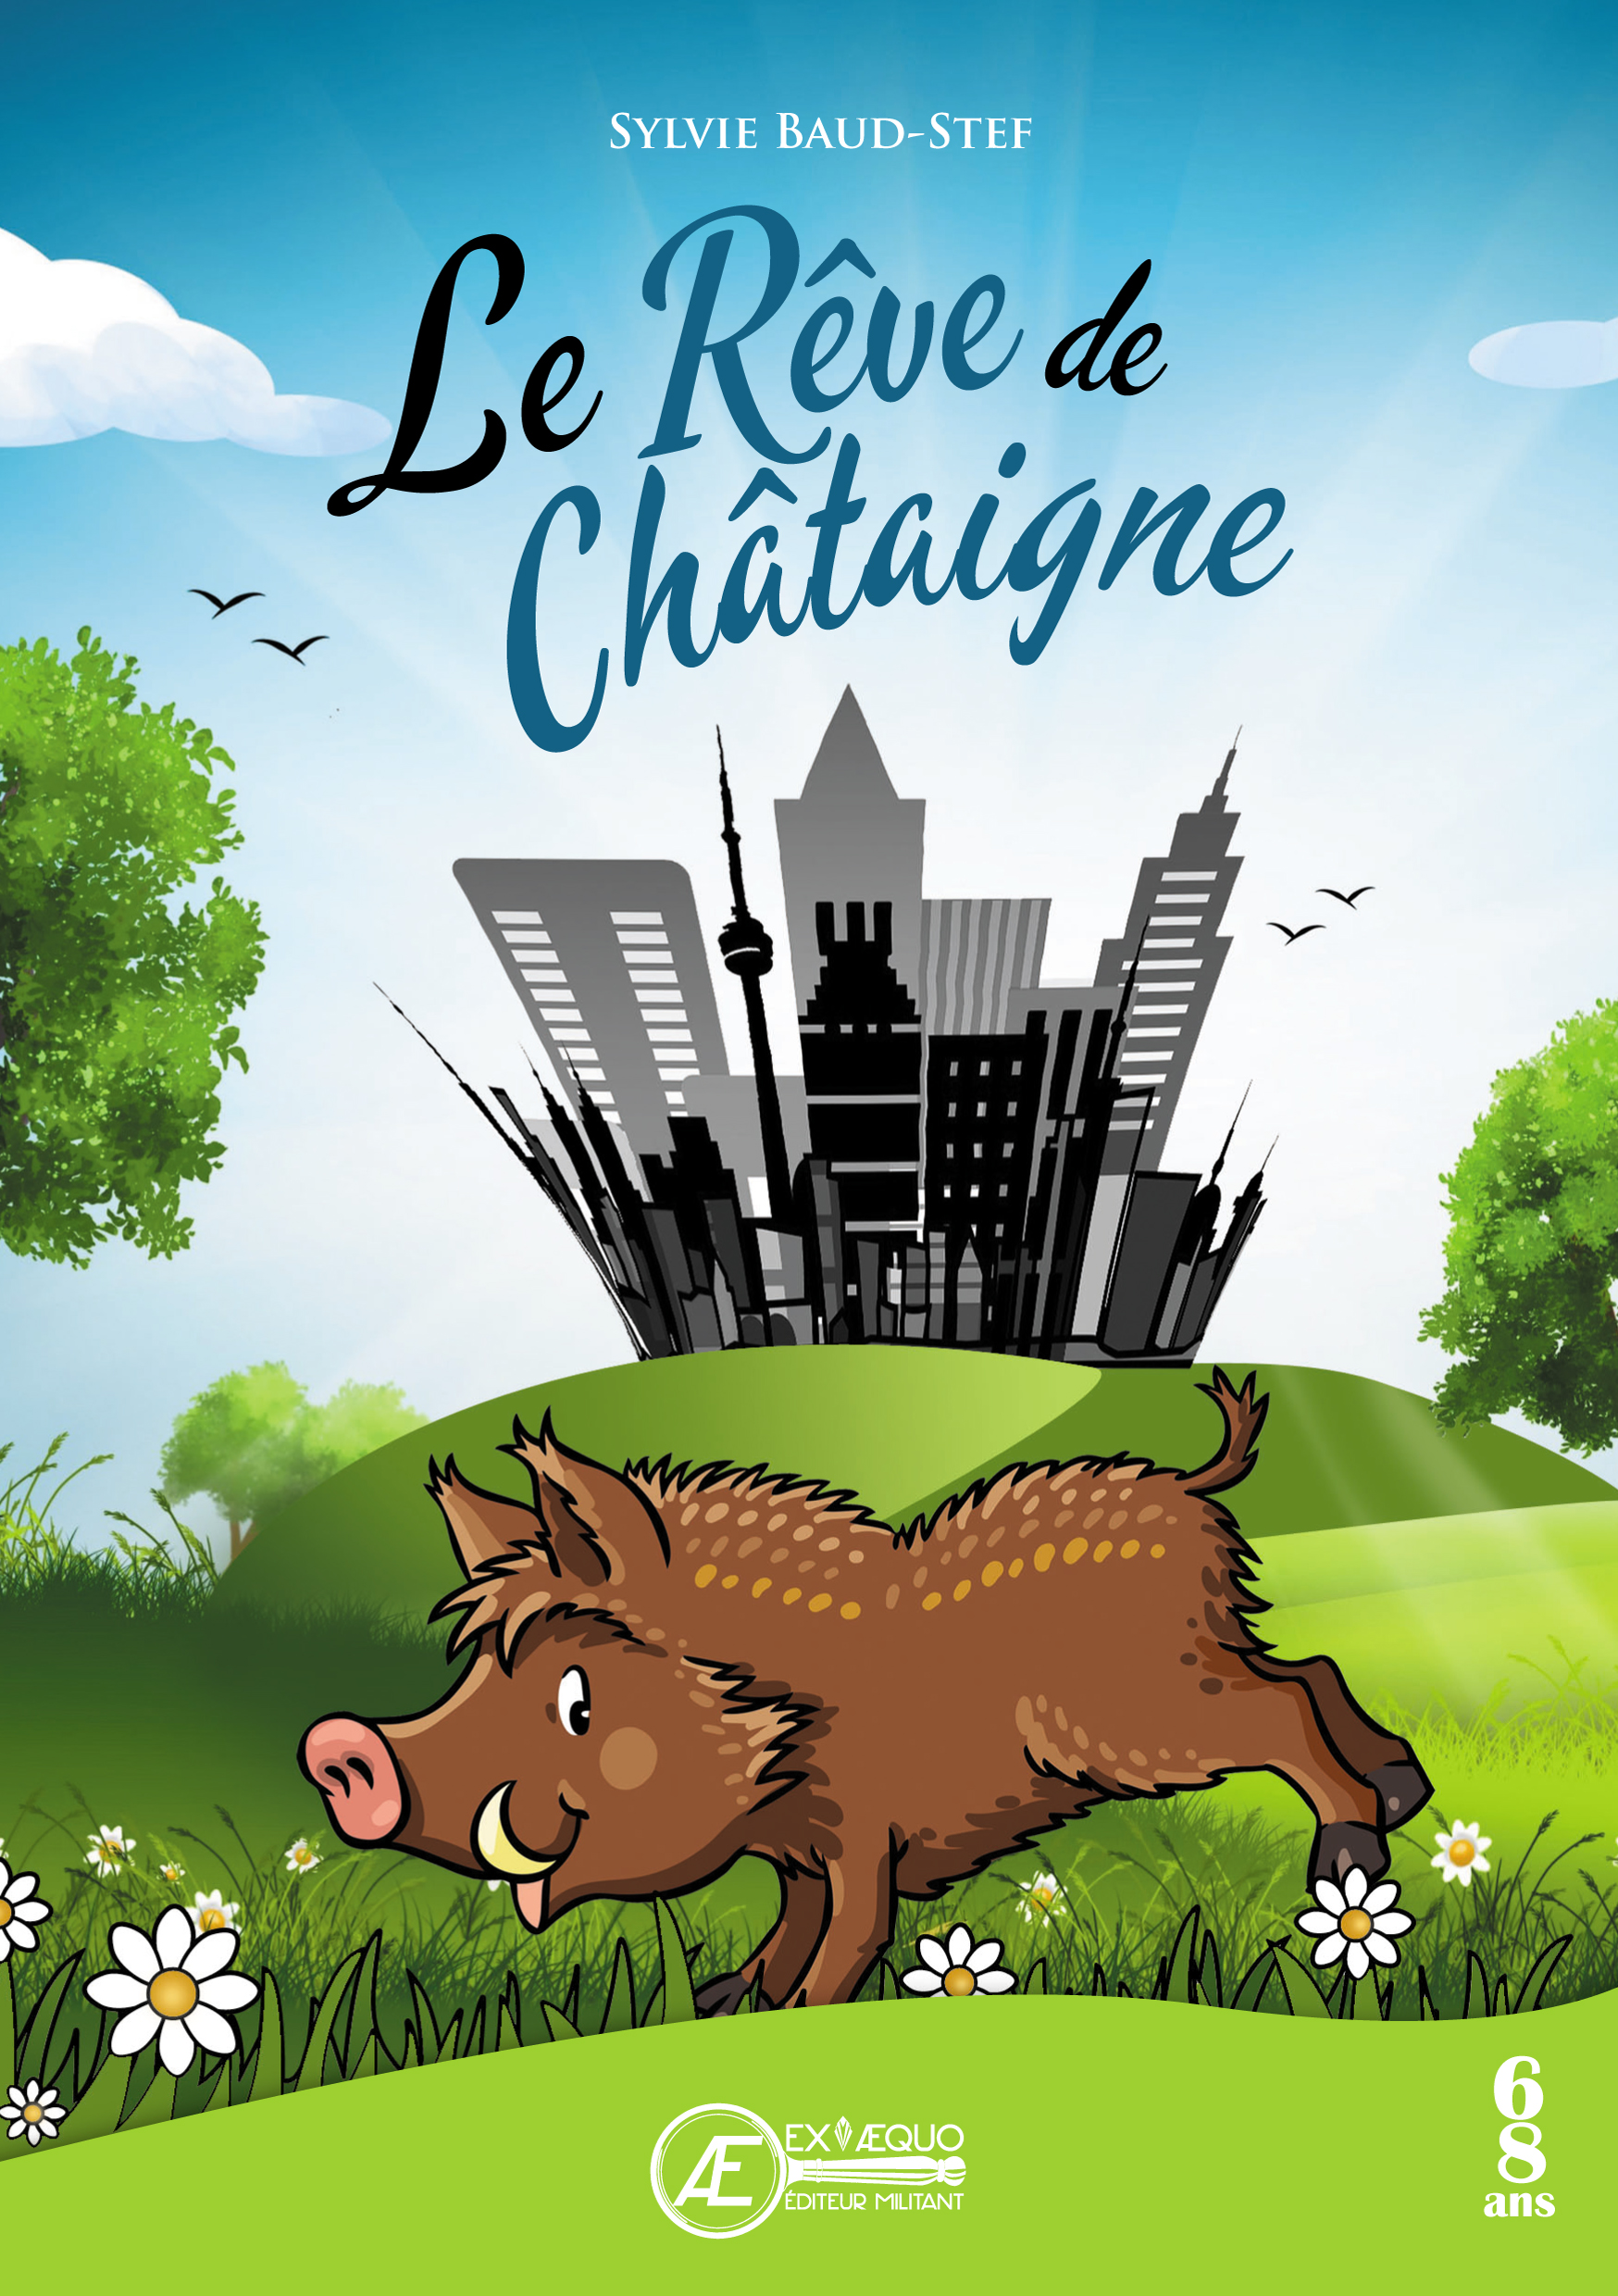 You are currently viewing Le Rêve de Châtaigne, de Sylvie Baud-Stef